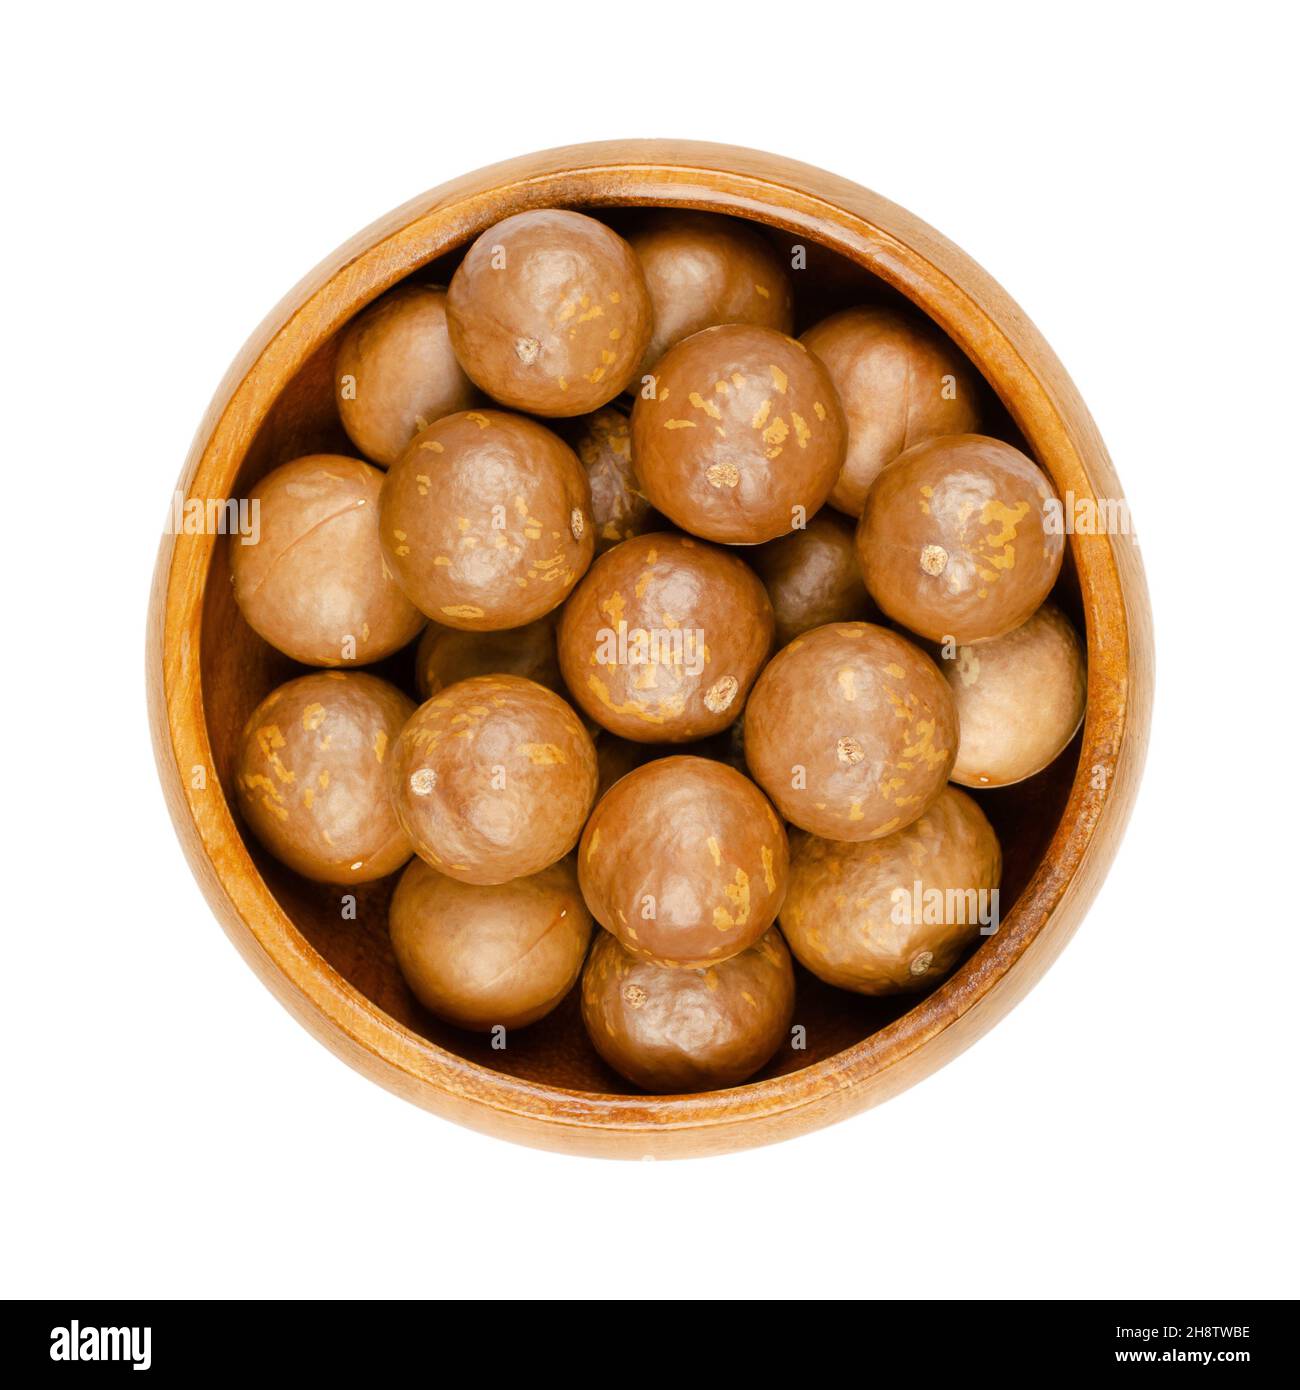 Noix de macadamia dans leurs coquilles, dans un bol en bois.Groupe de noix séchées, non décortiquées, également connues sous le nom de Queensland, buisson, maroochi, baule et noix d'Hawaï. Banque D'Images